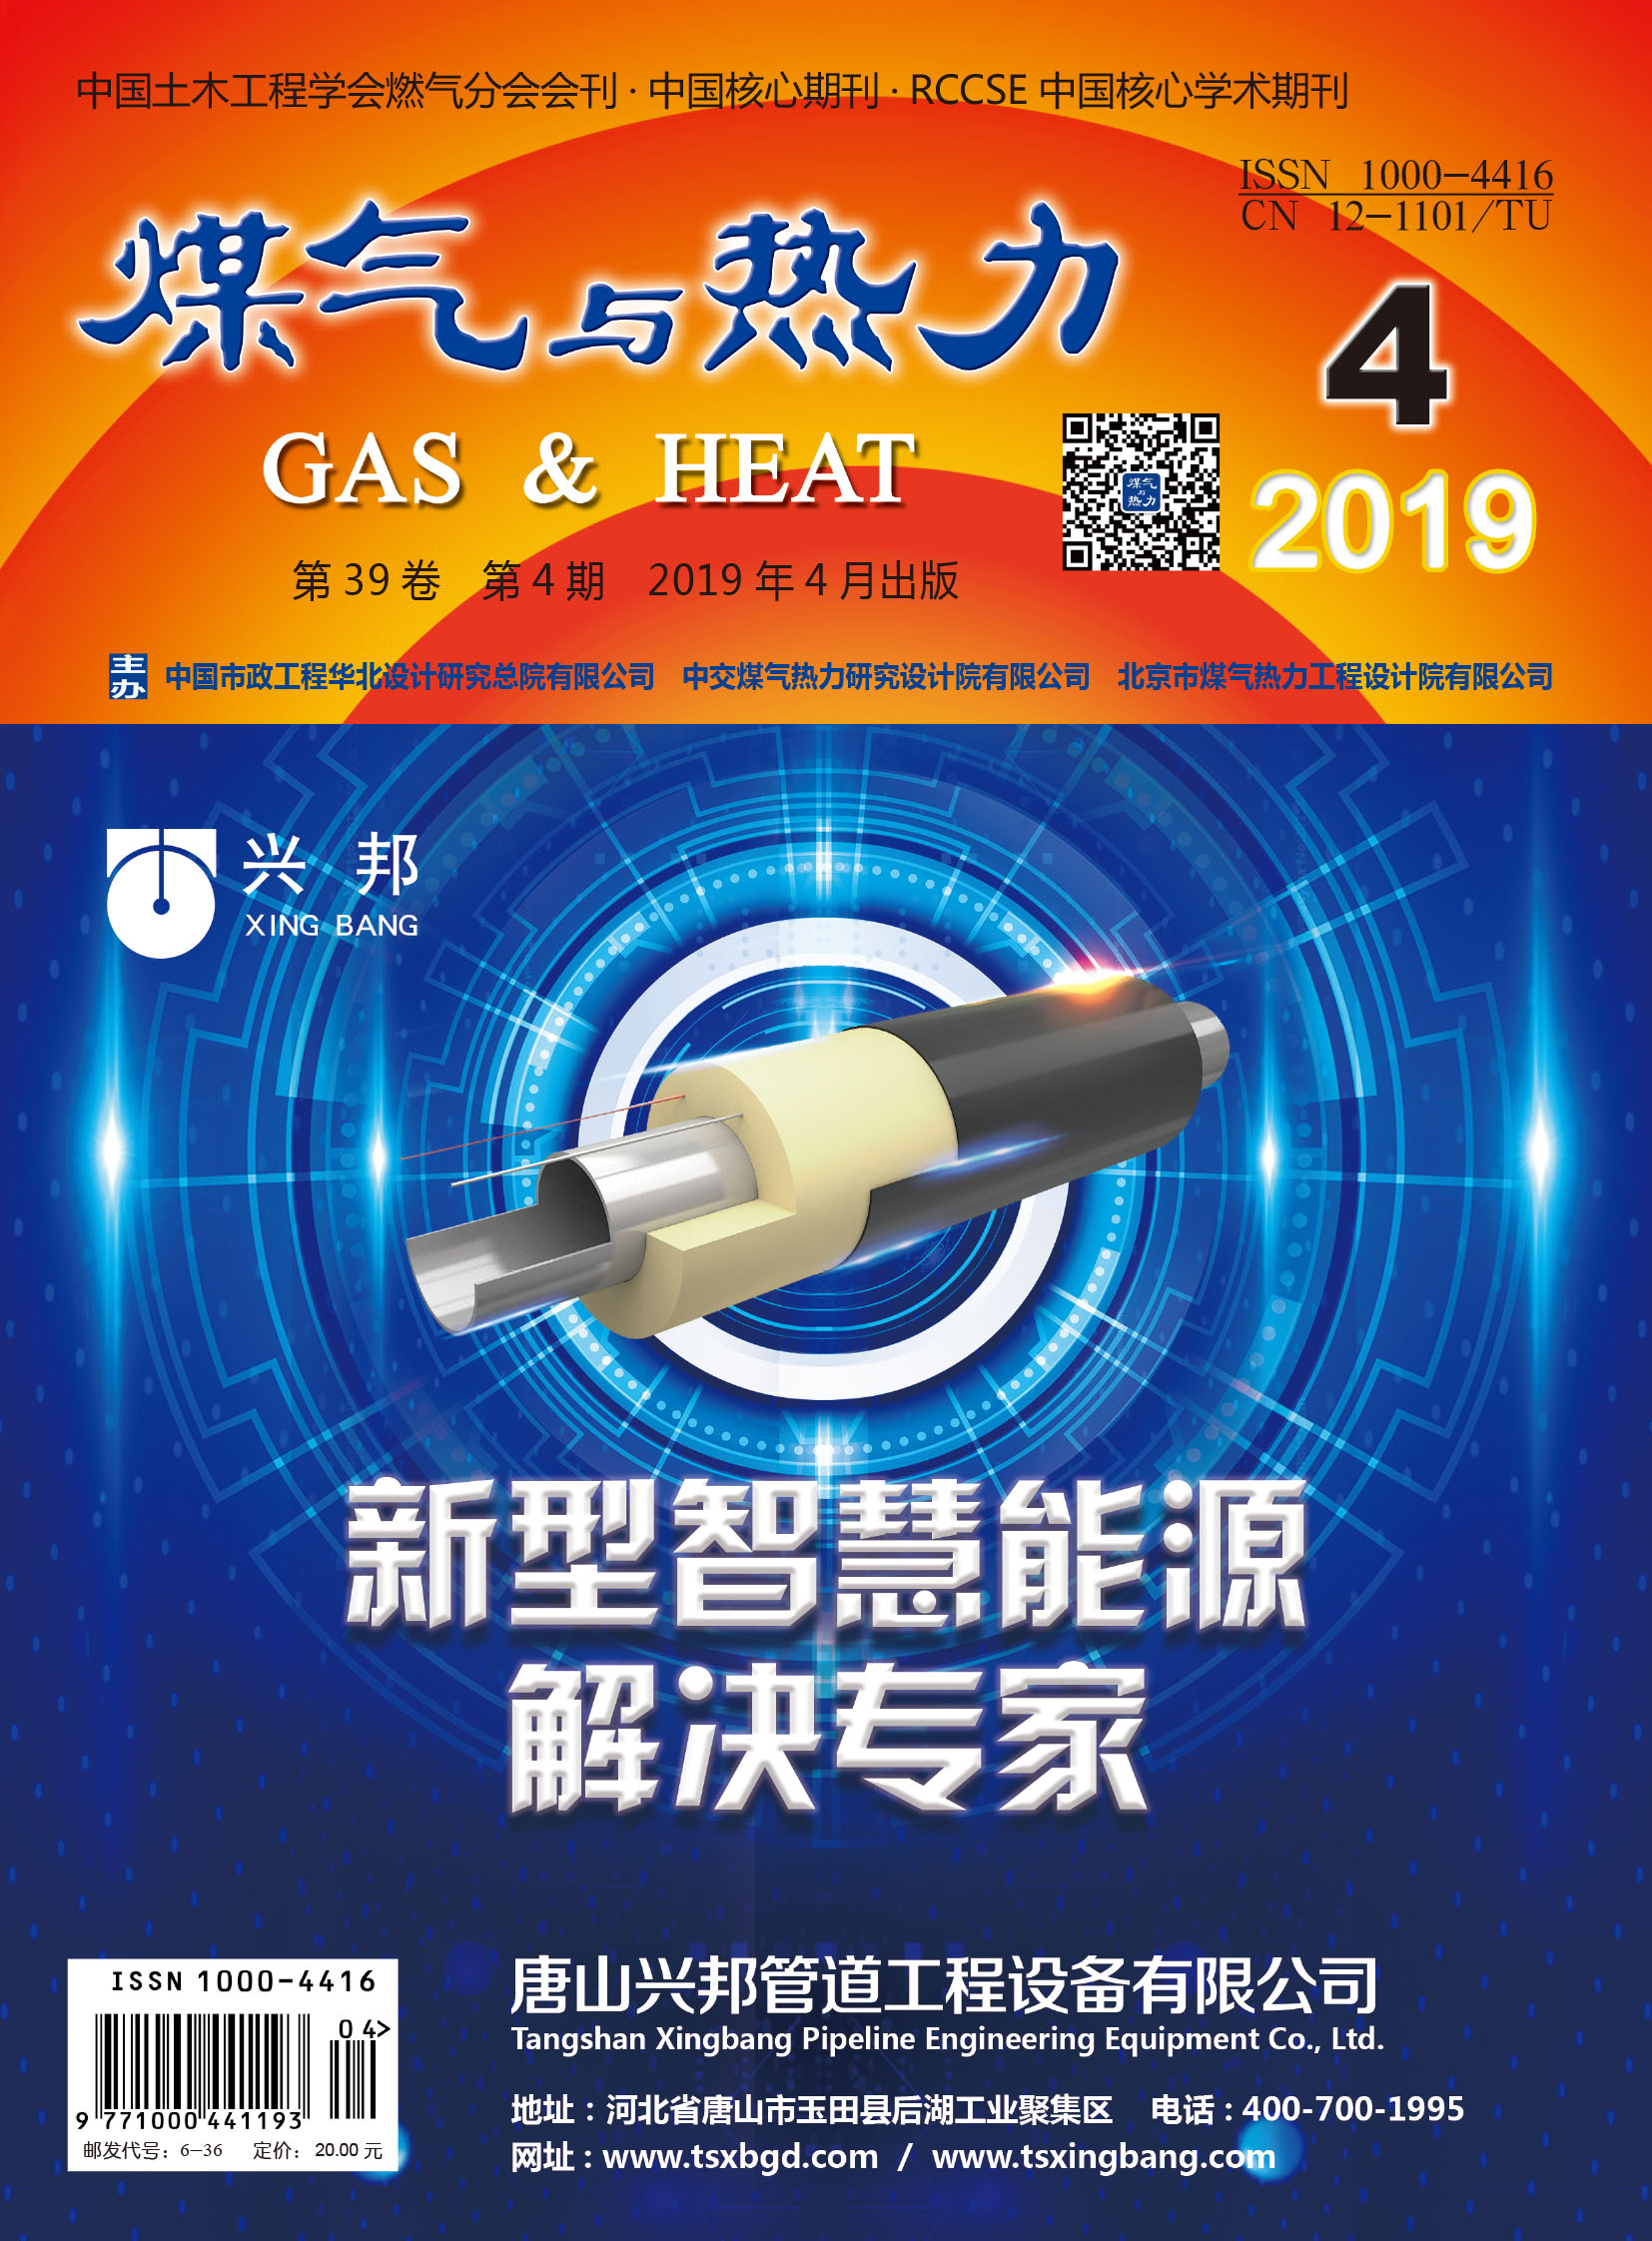 《煤气与热力》2019年4月刊